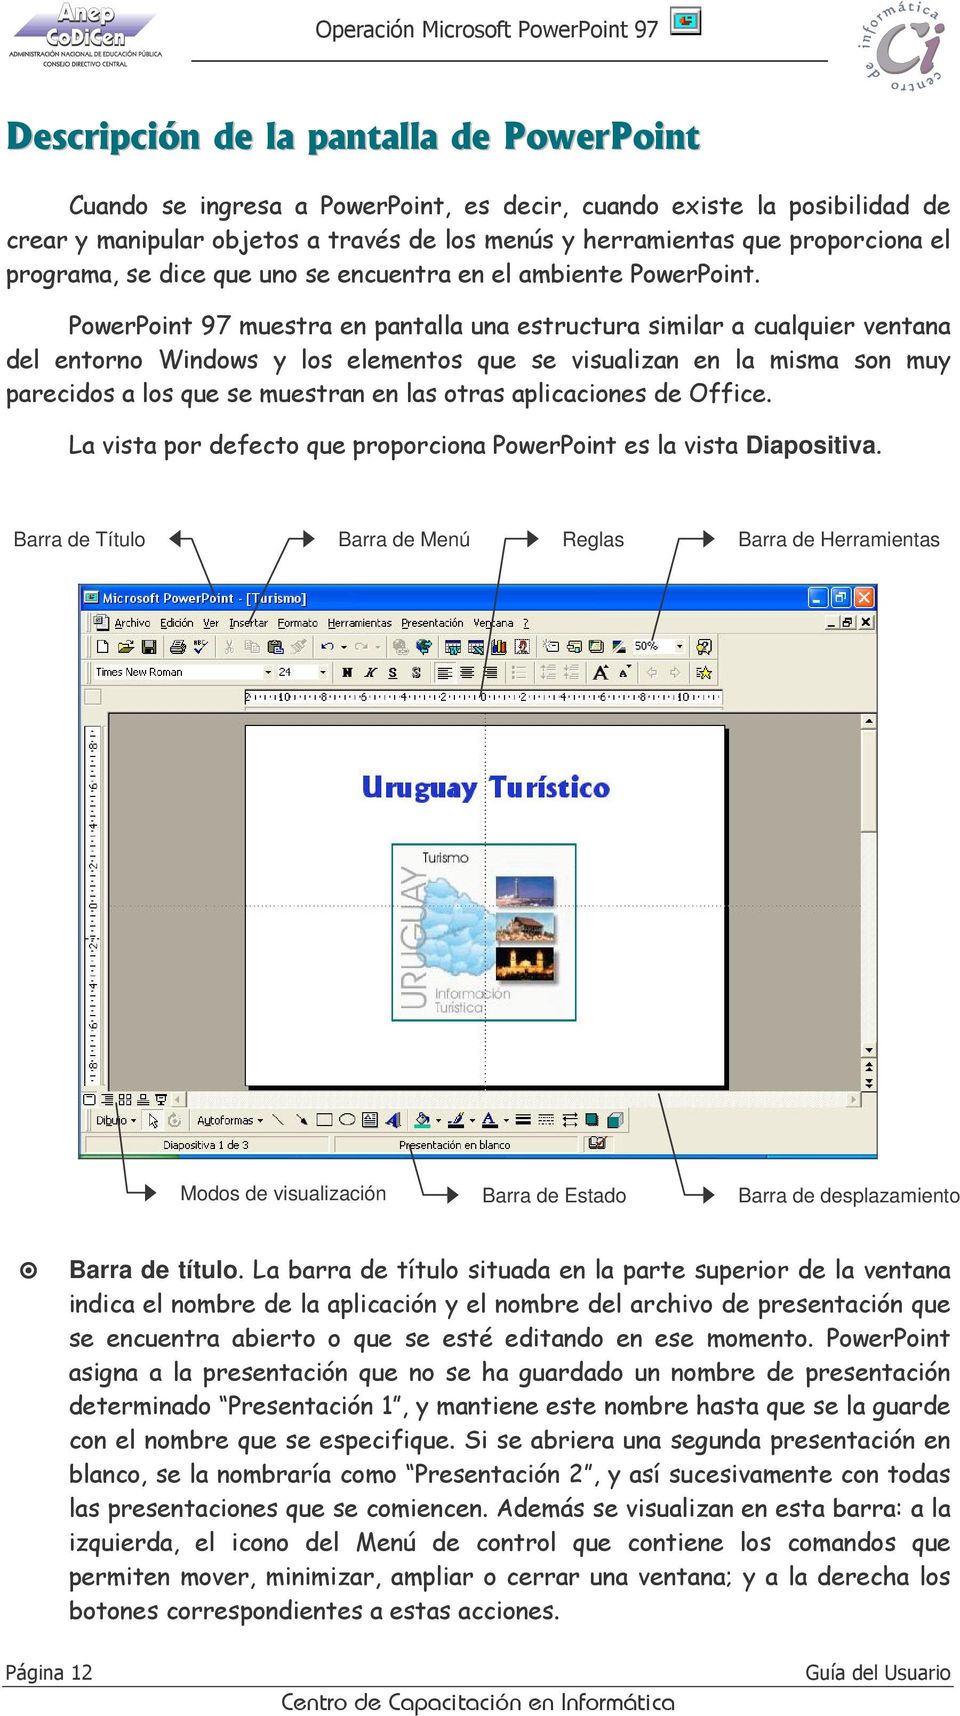 PowerPoint 97 muestra en pantalla una estructura similar a cualquier ventana del entorno Windows y los elementos que se visualizan en la misma son muy parecidos a los que se muestran en las otras